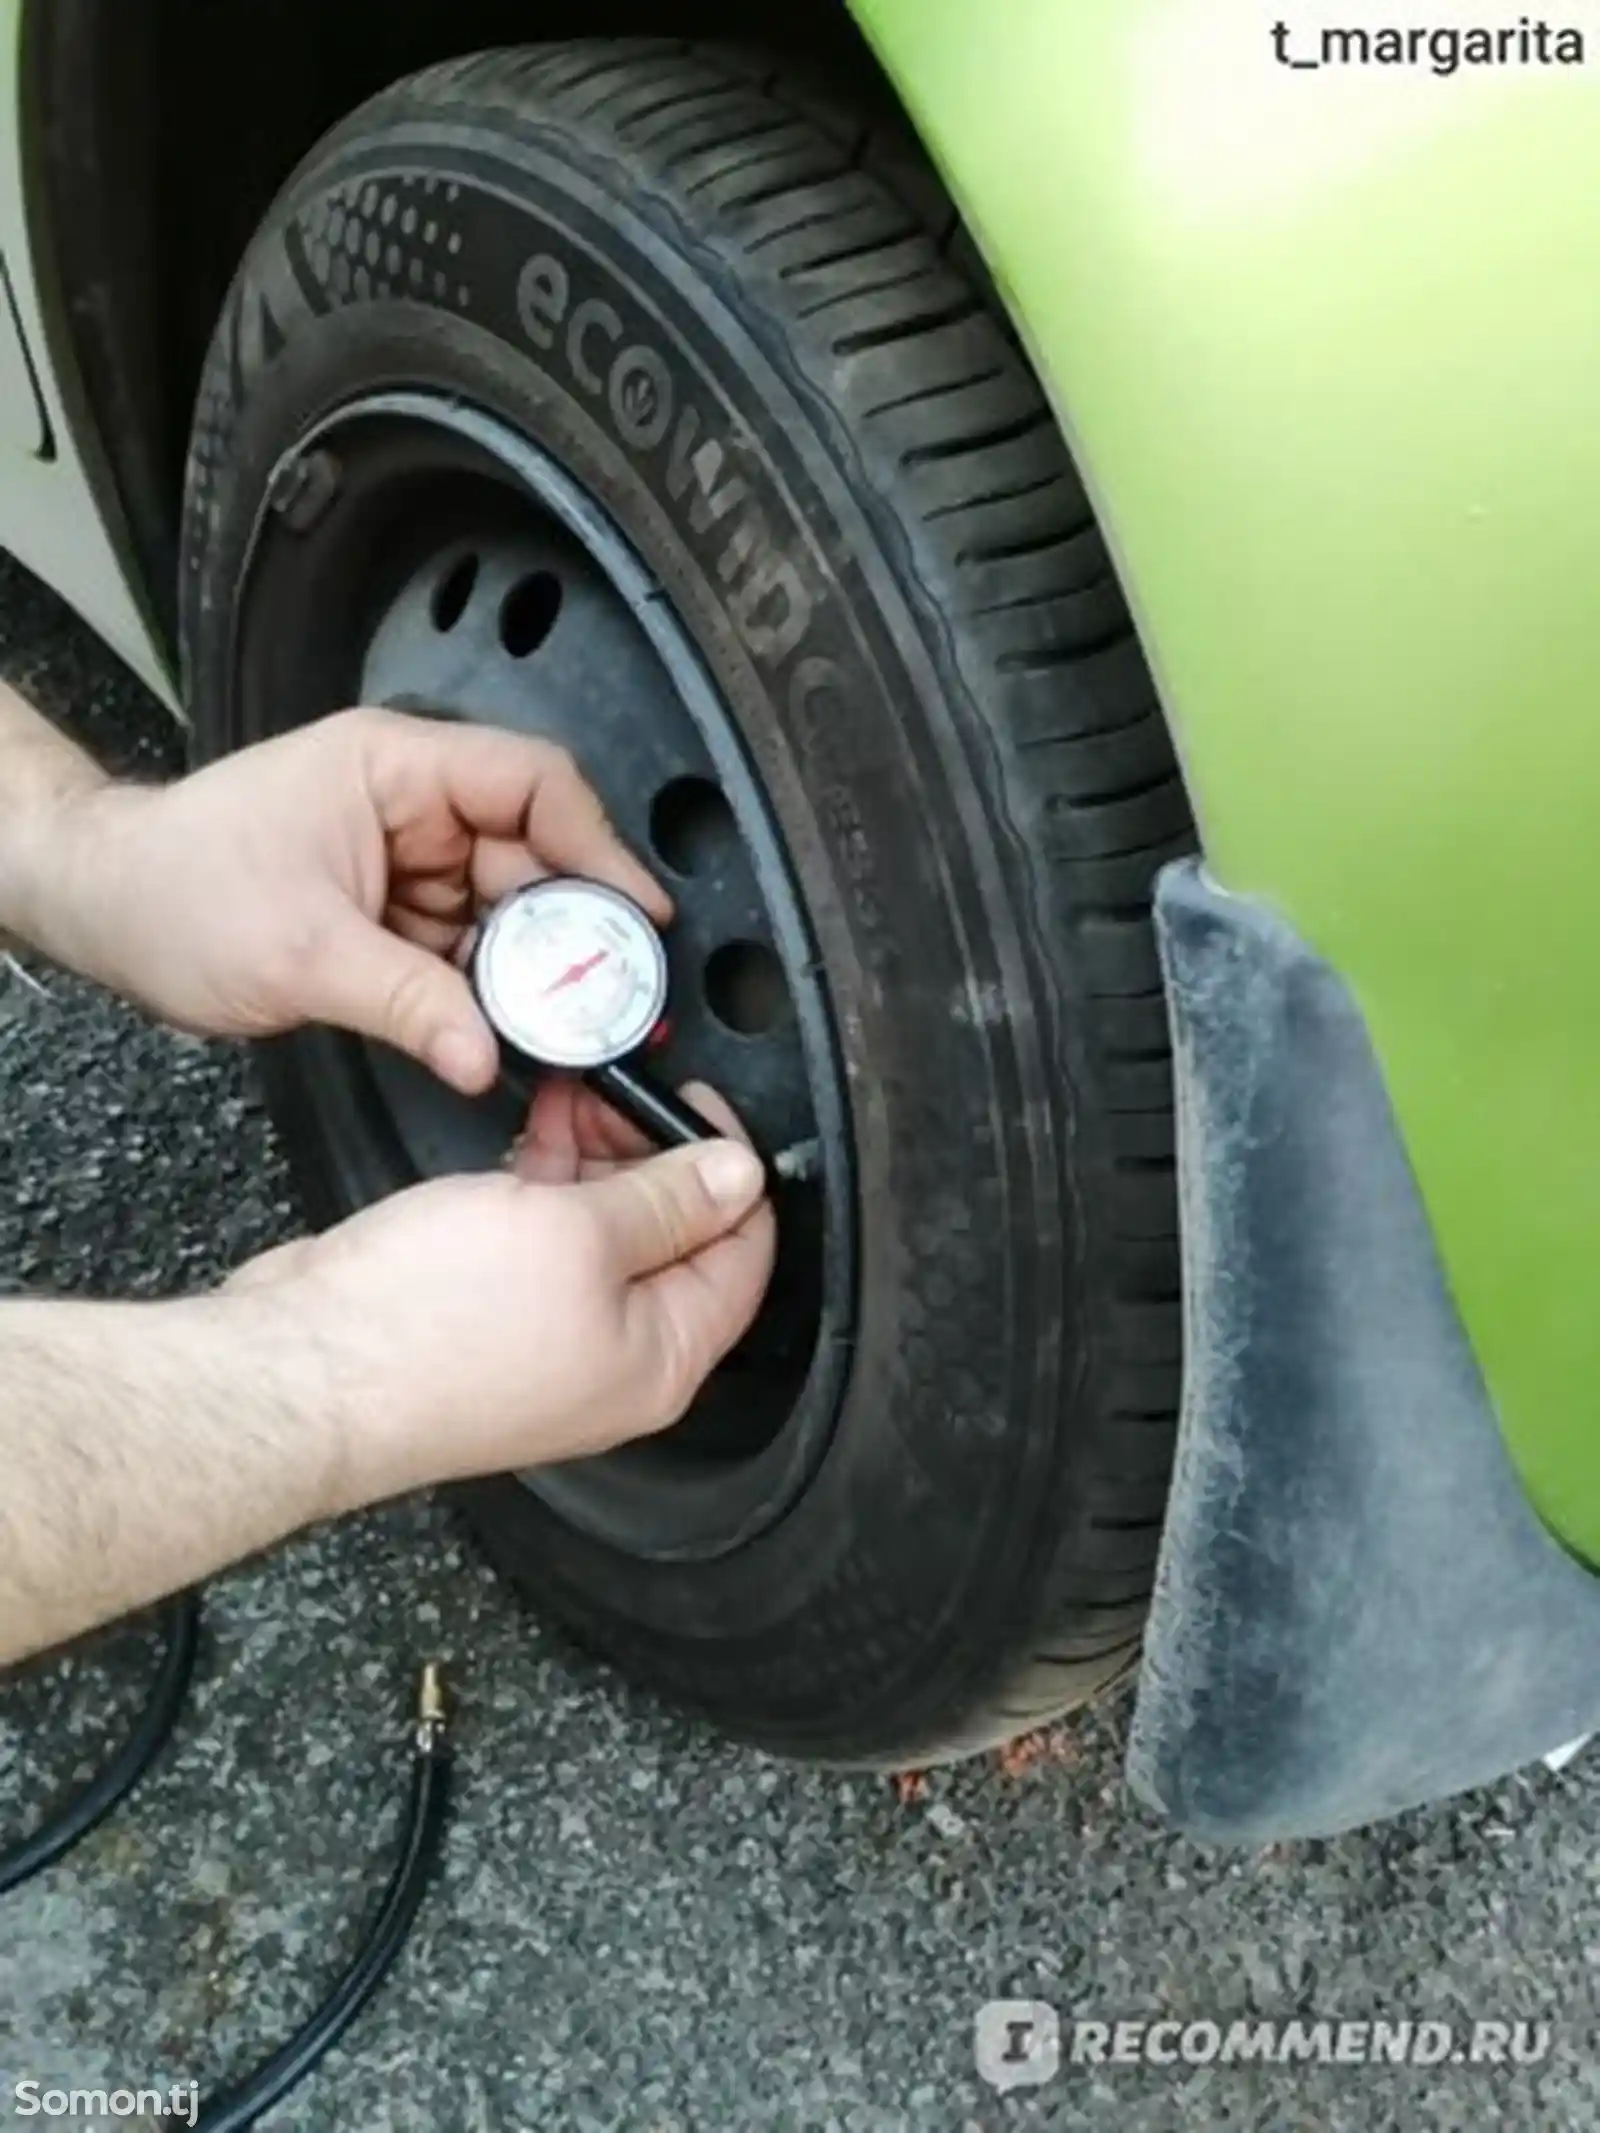 Манометр для проверки давления в шинах Autostandart-4